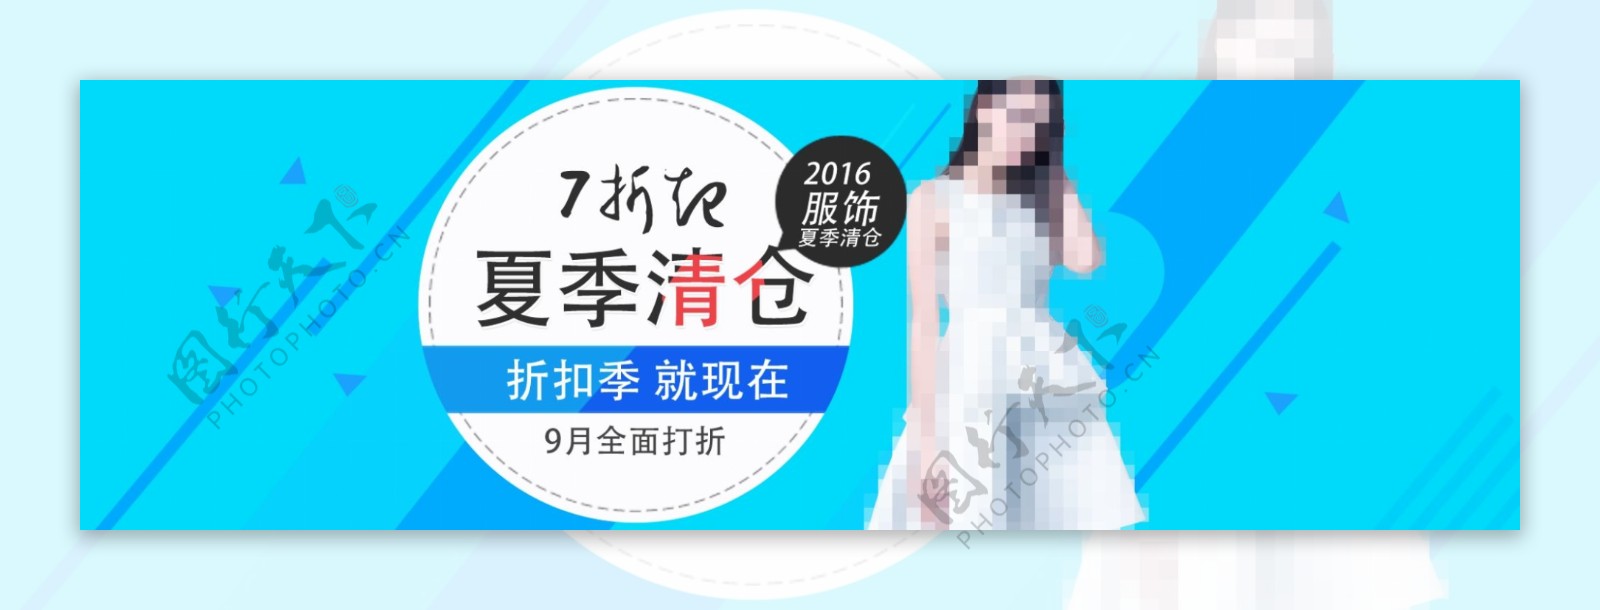 2016淘宝服饰夏季清仓促销海报